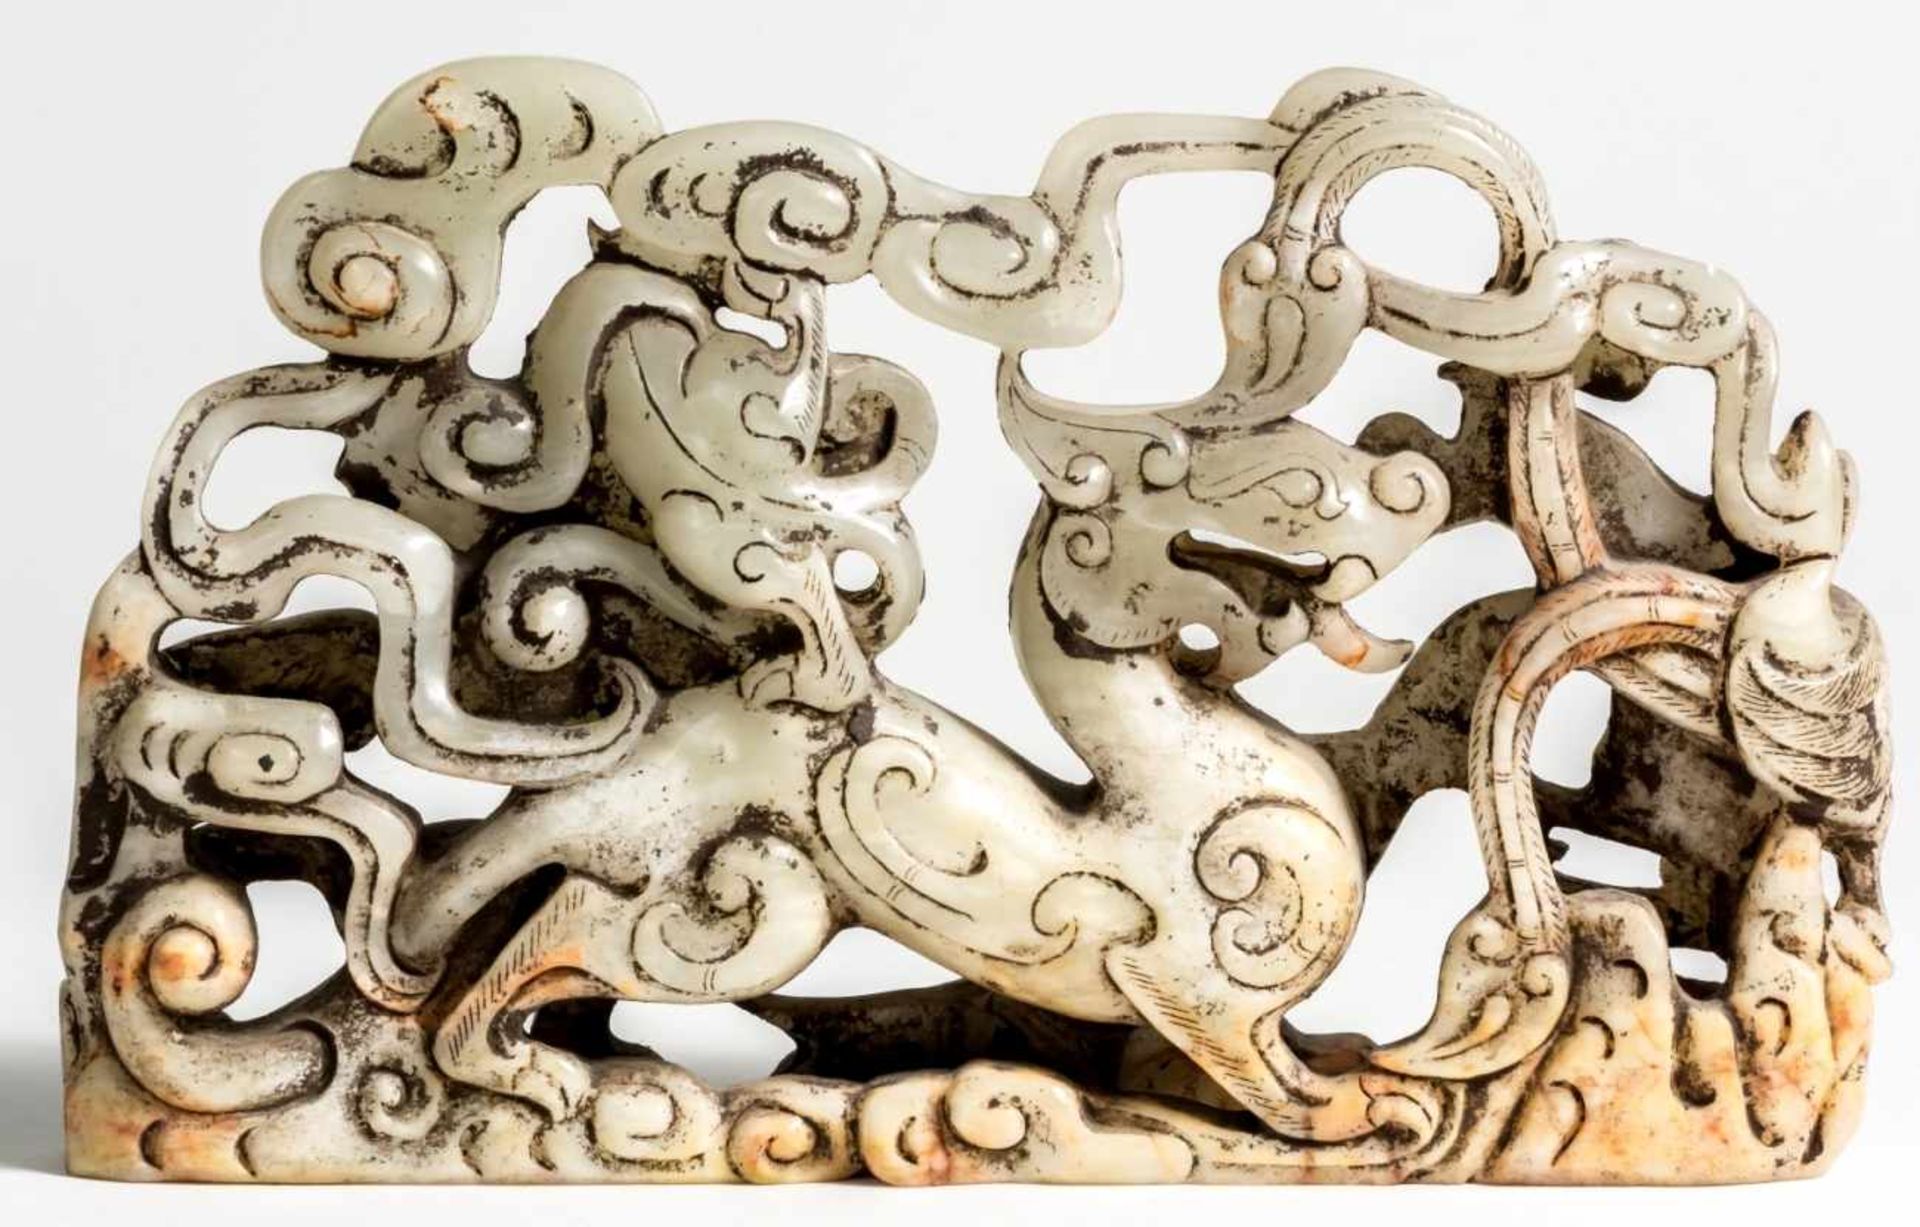 Chinesischer Jade Drachen23 x 14 x 3,5 cmProvenienz: Privatsammlung Zürich.Chinese Jade Dragon, 23 x